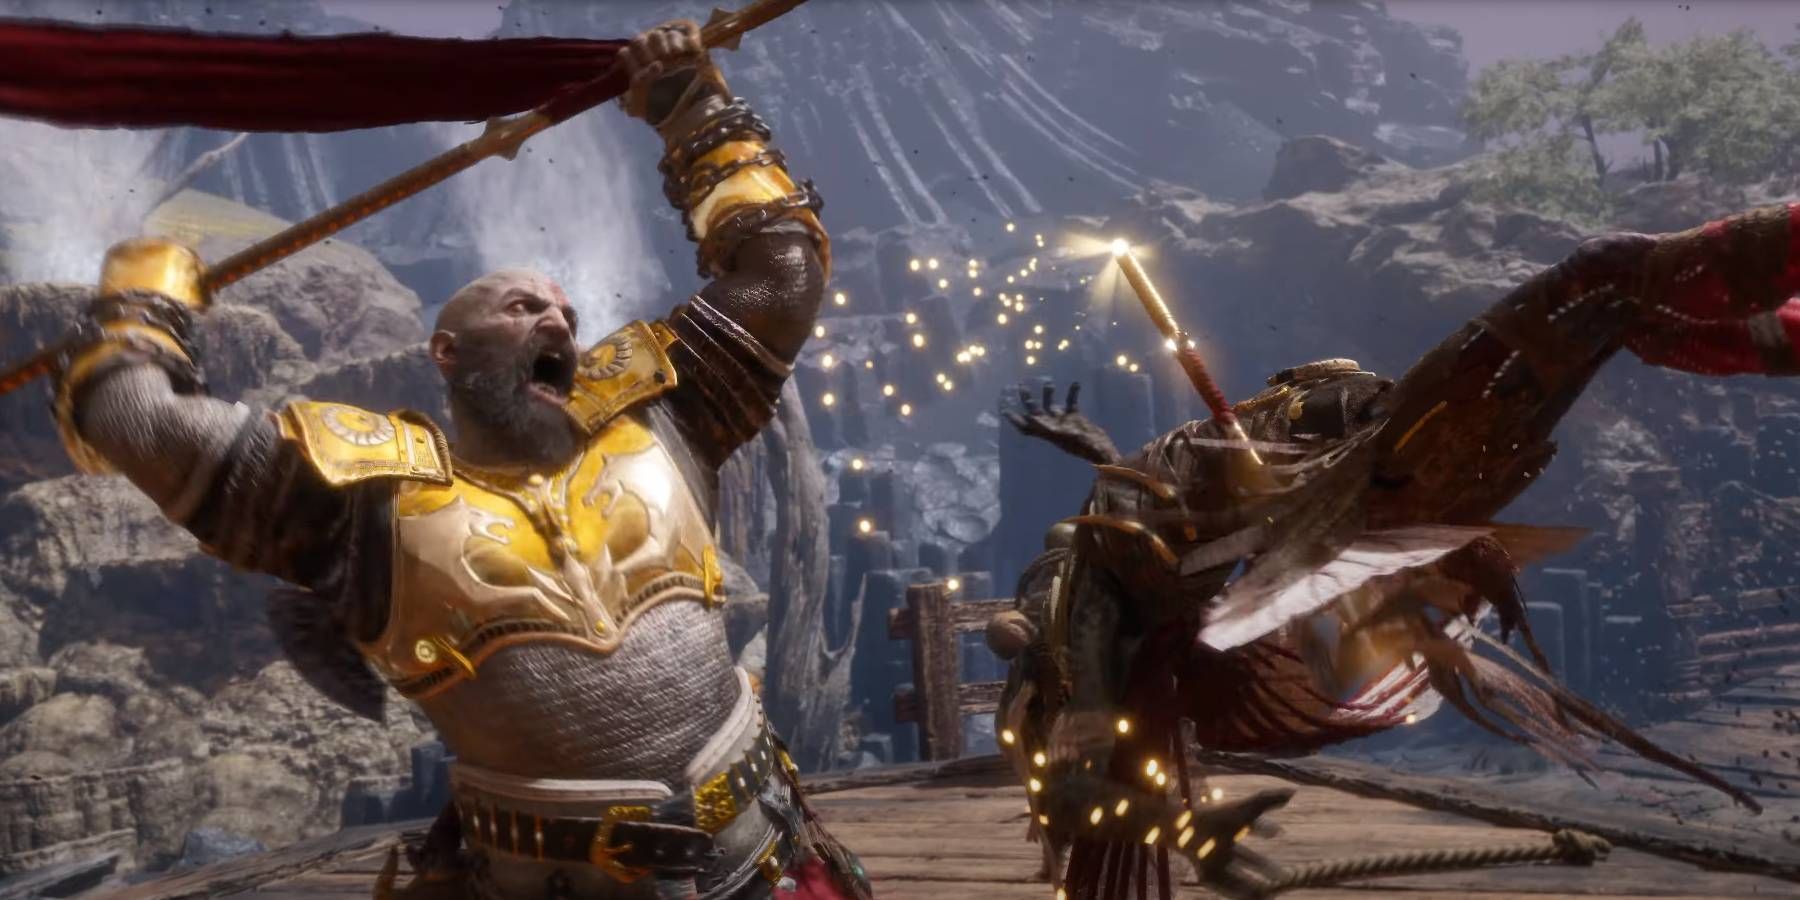 God of War Ragnarok Valhalla Kratos About to Impale Enemy with Draupnir Spear Weapon